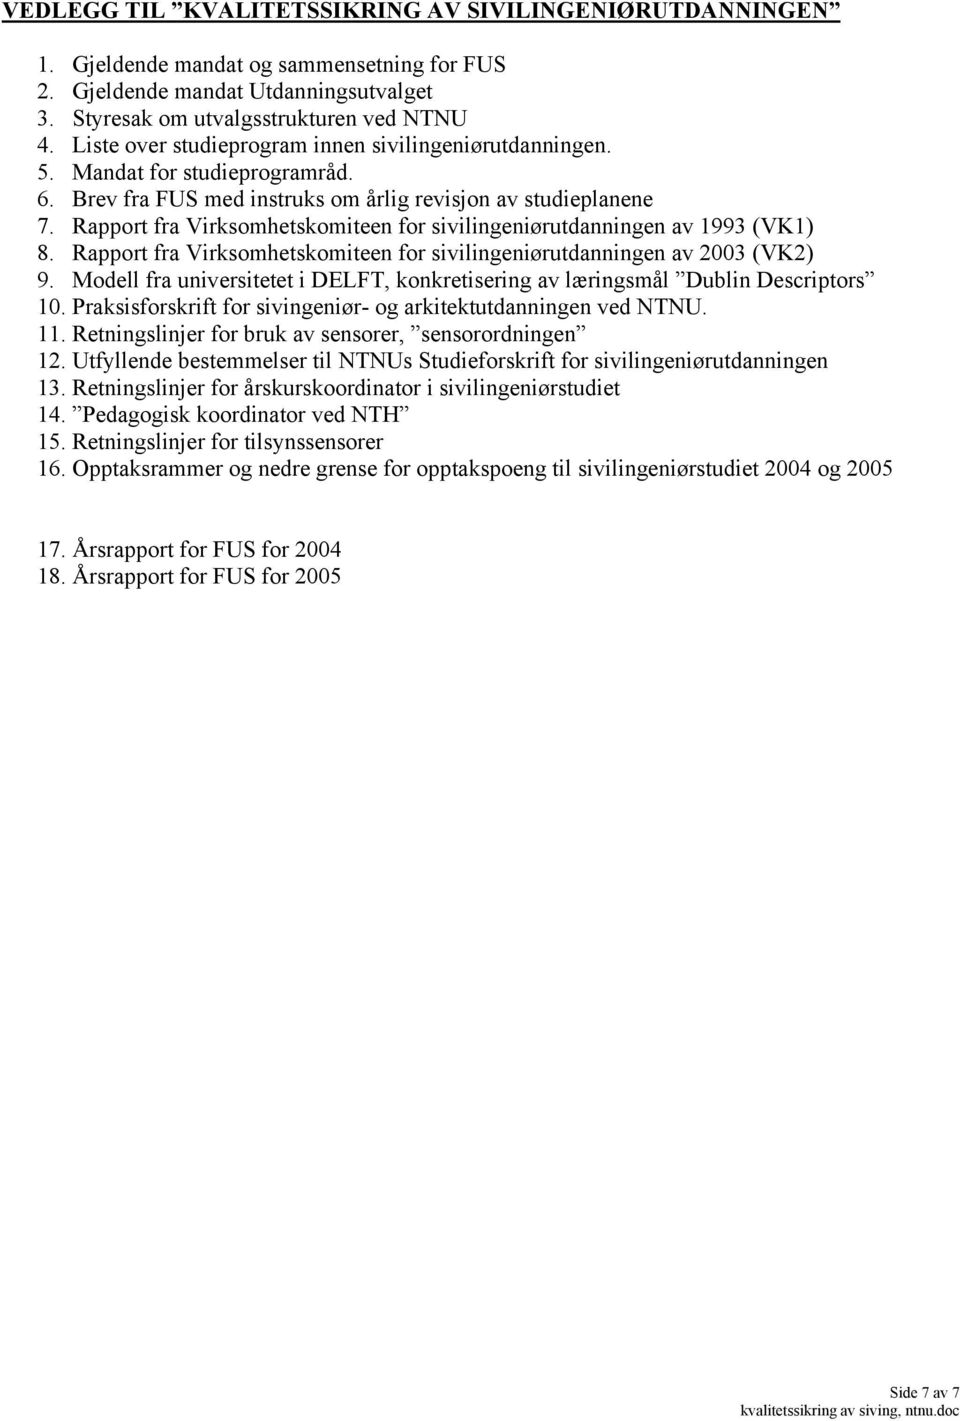 Rapport fra Virksomhetskomiteen for sivilingeniørutdanningen av 1993 (VK1) 8. Rapport fra Virksomhetskomiteen for sivilingeniørutdanningen av 2003 (VK2) 9.